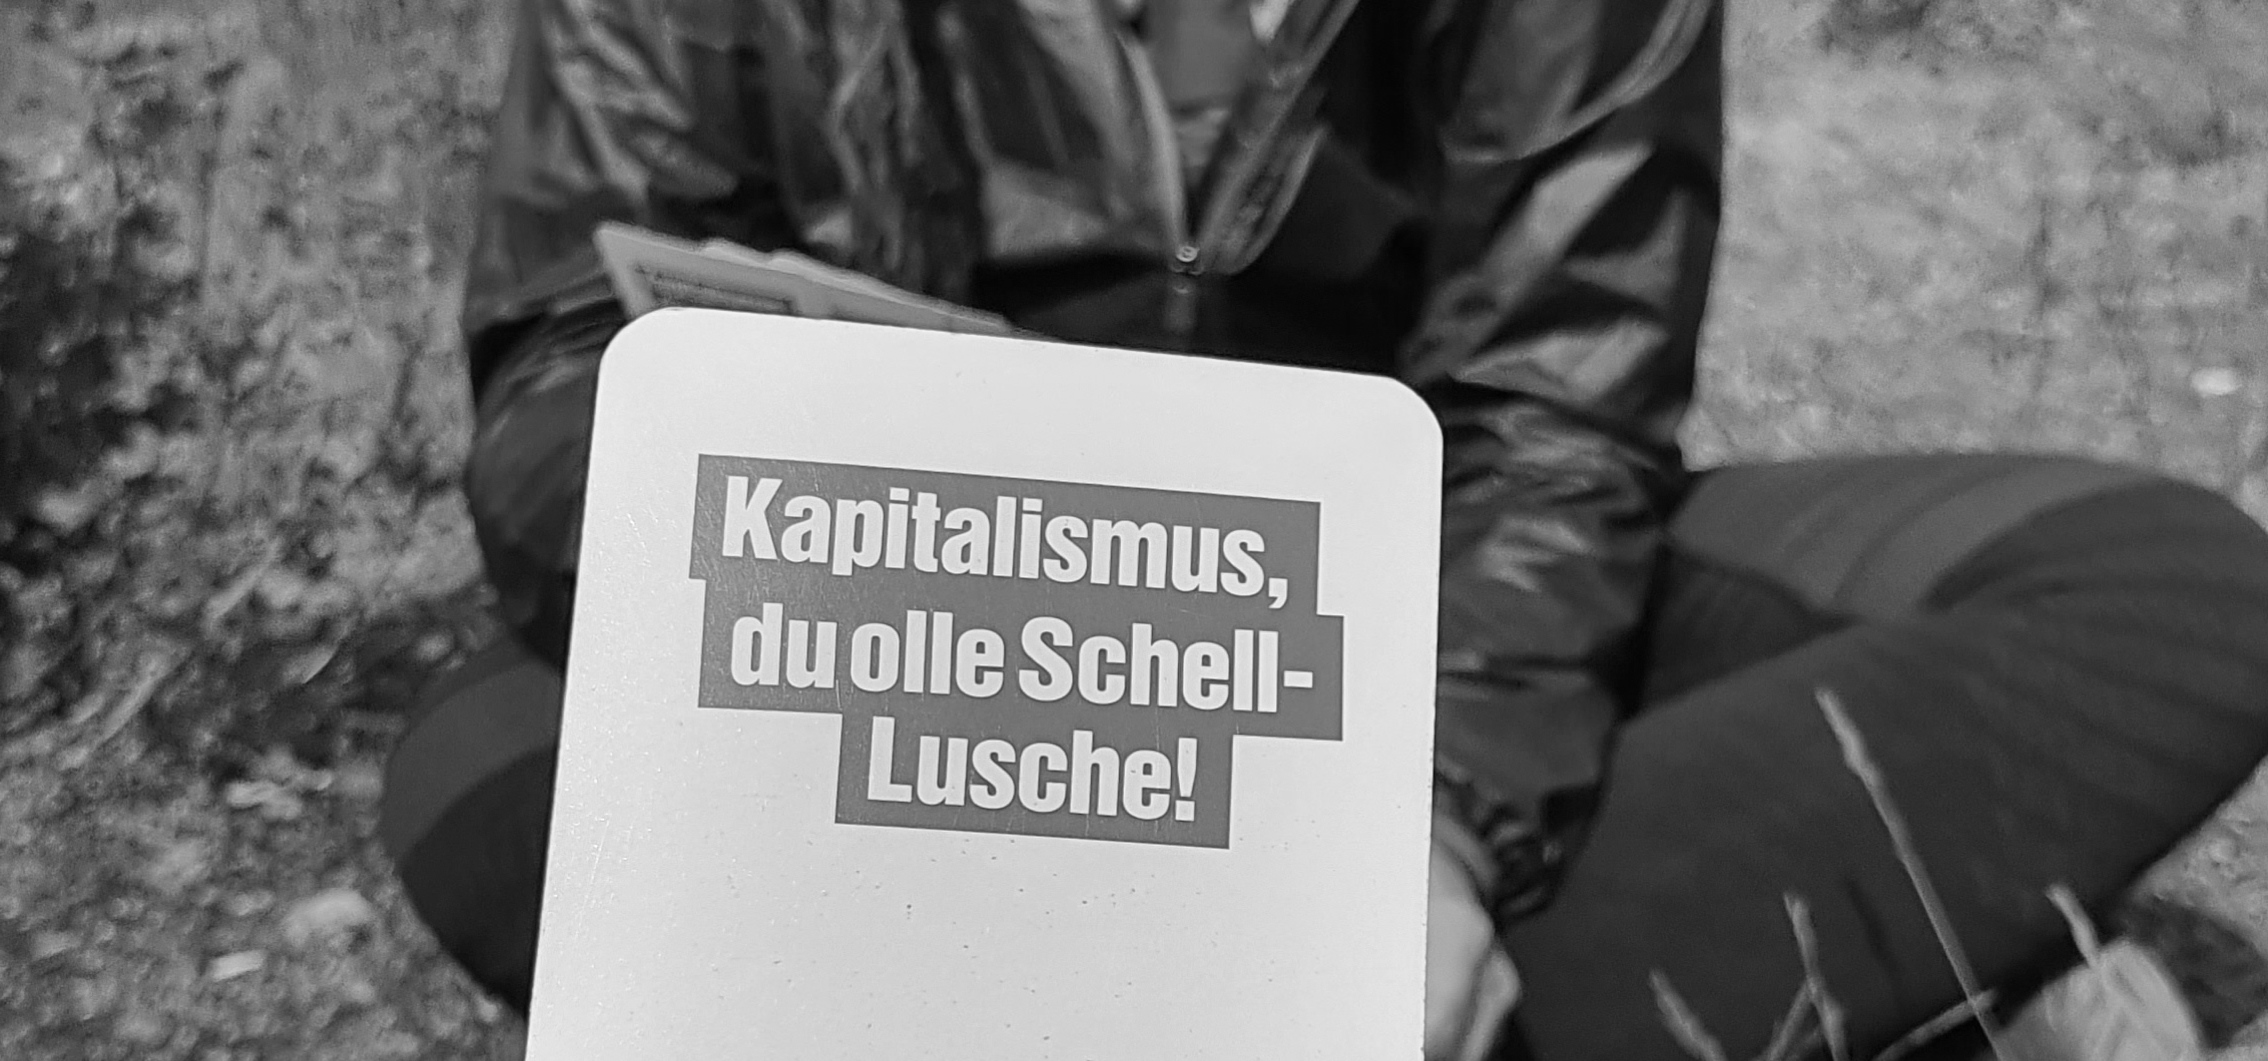 Rückseite von Skatkarten mit dem Aufdruck "Kapitalismus, du olle Schell-Lusche!"